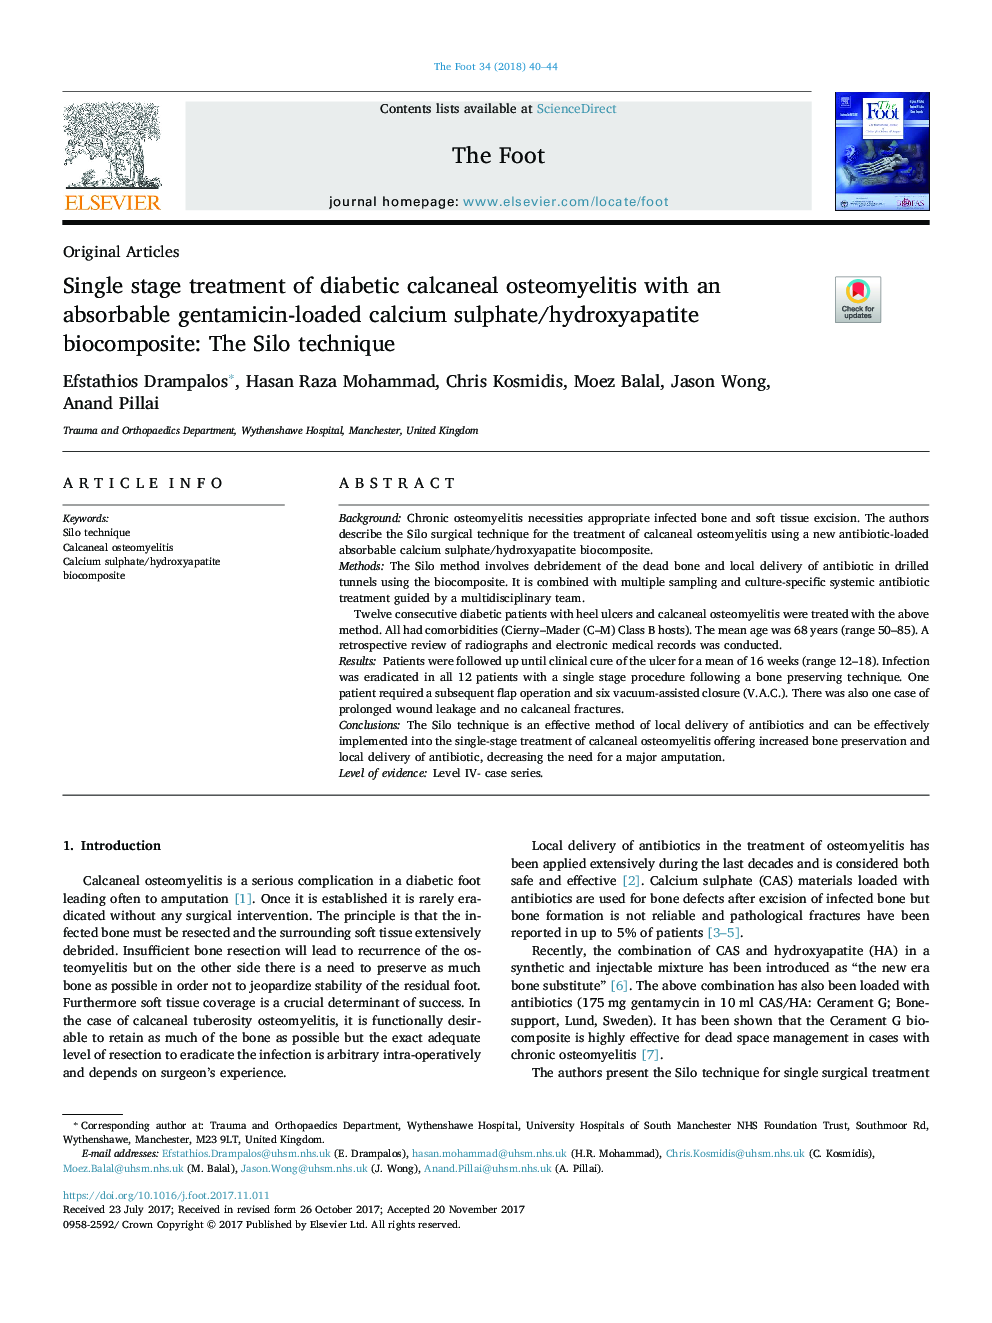 درمان تک مرحله ای استئویمیلیت کالکایی دیابتی با یک ترکیب بیولوژیکی کلسیم سولفات / هیدروکسی آپاتیت قابل جذب ژنتمیکین: تکنیک سیلو 